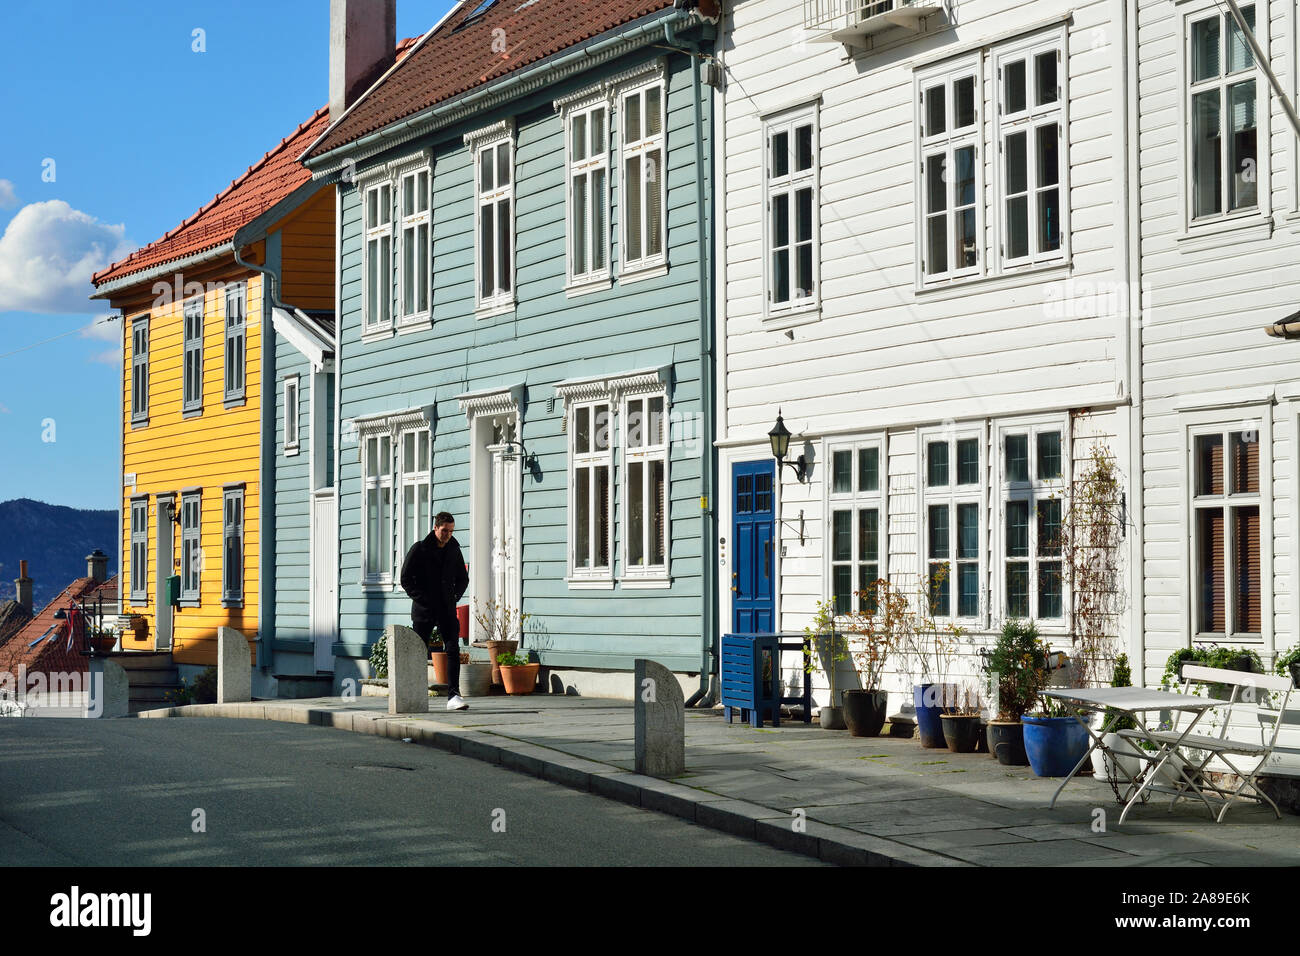 Wooden houses in Bergen's Old Town. Bergen, Norway Stock Photo